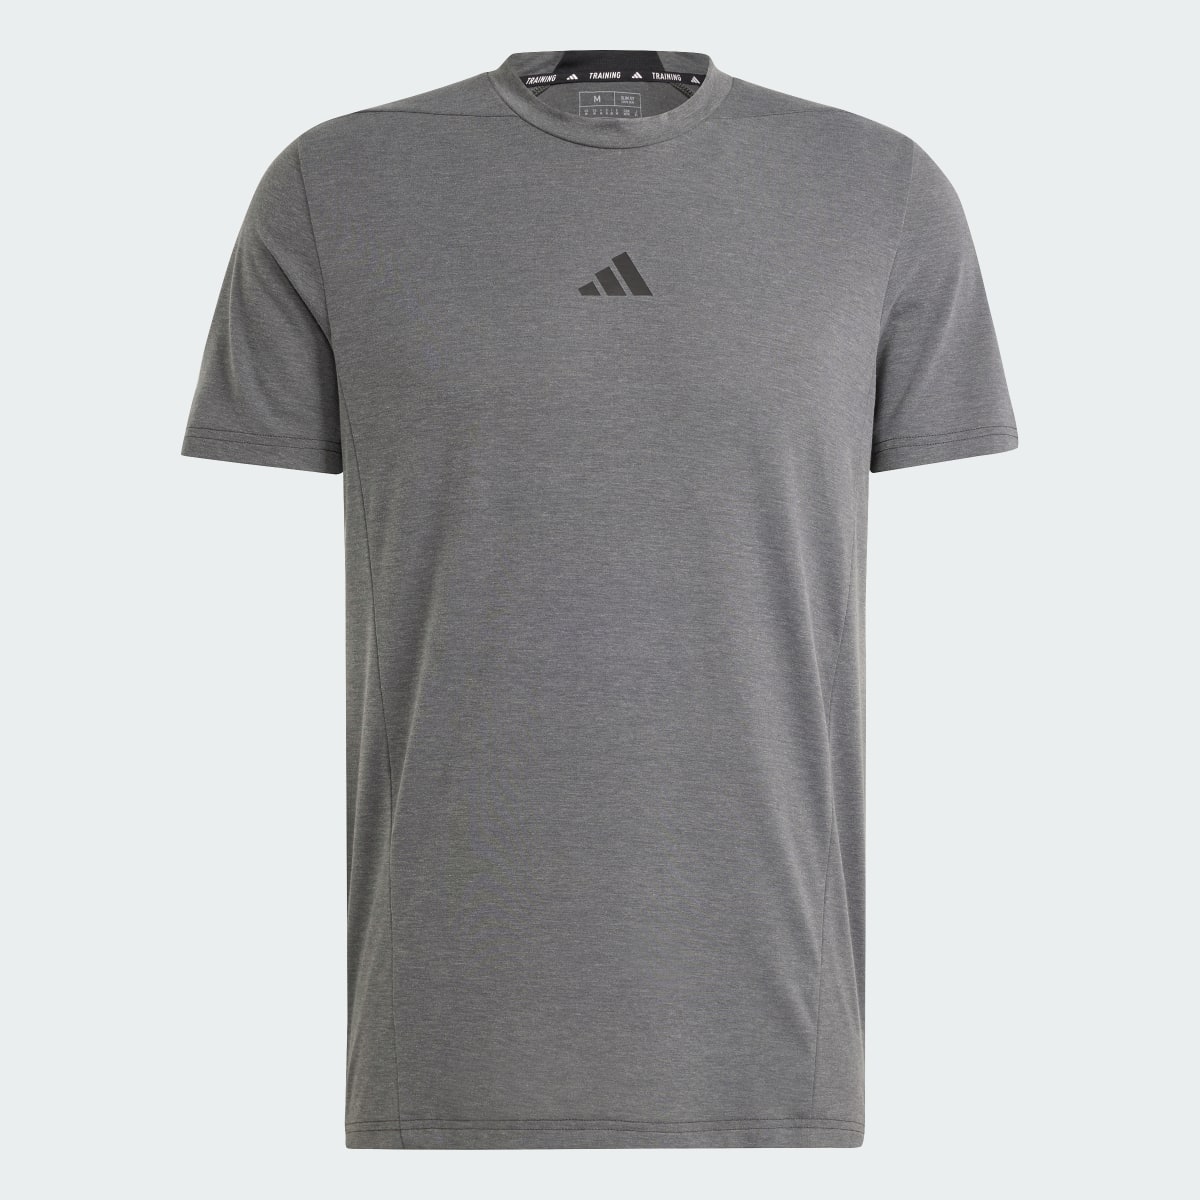 Adidas Camiseta Designed for Training Workout. 6